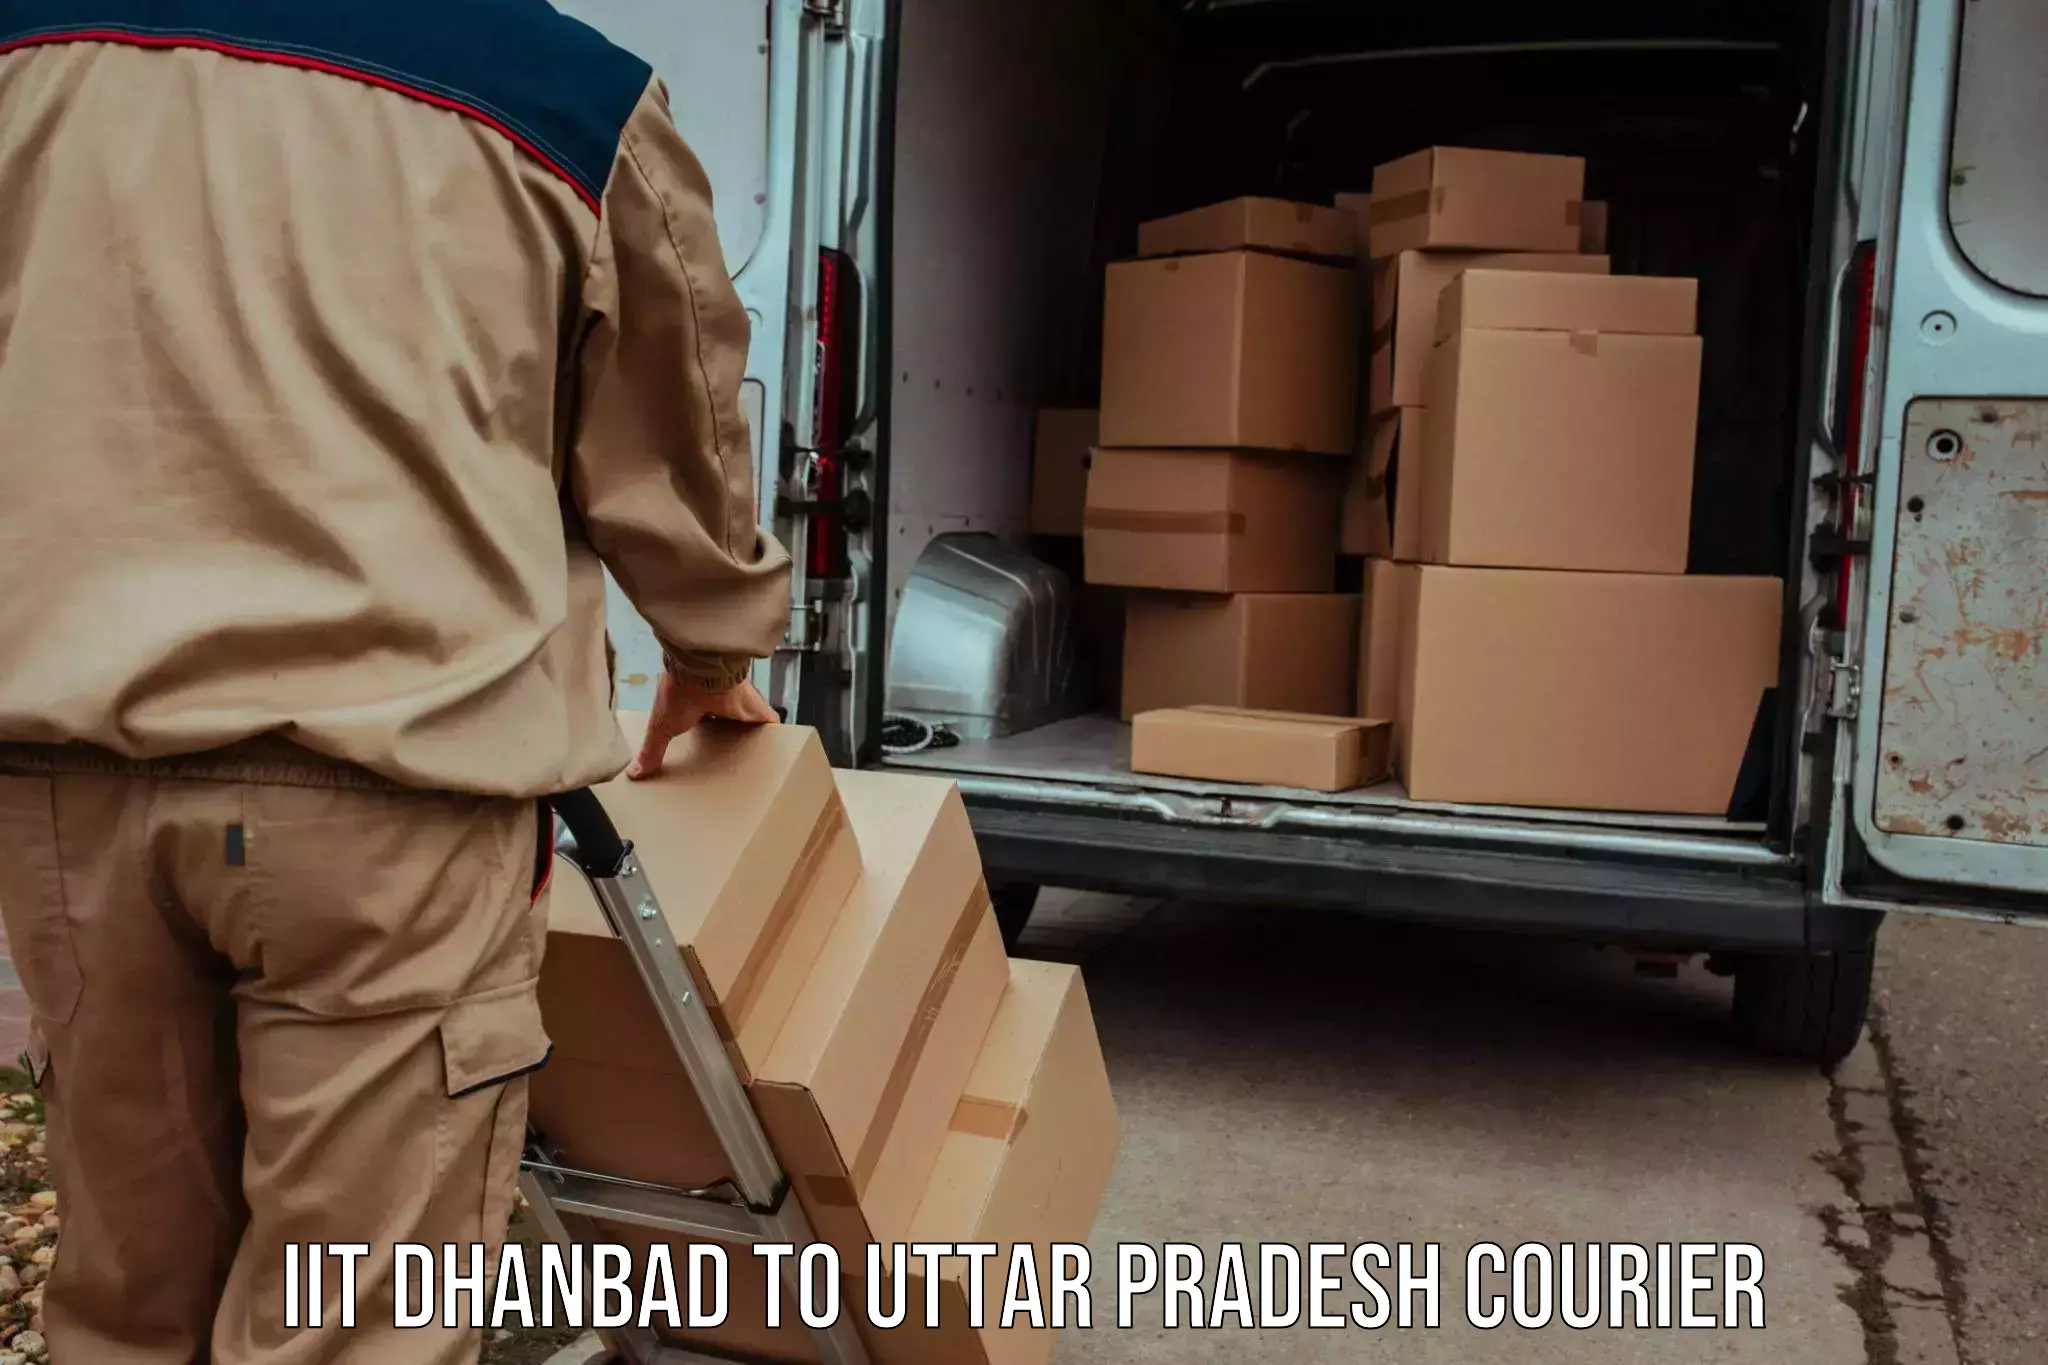 Doorstep delivery service IIT Dhanbad to Uttar Pradesh